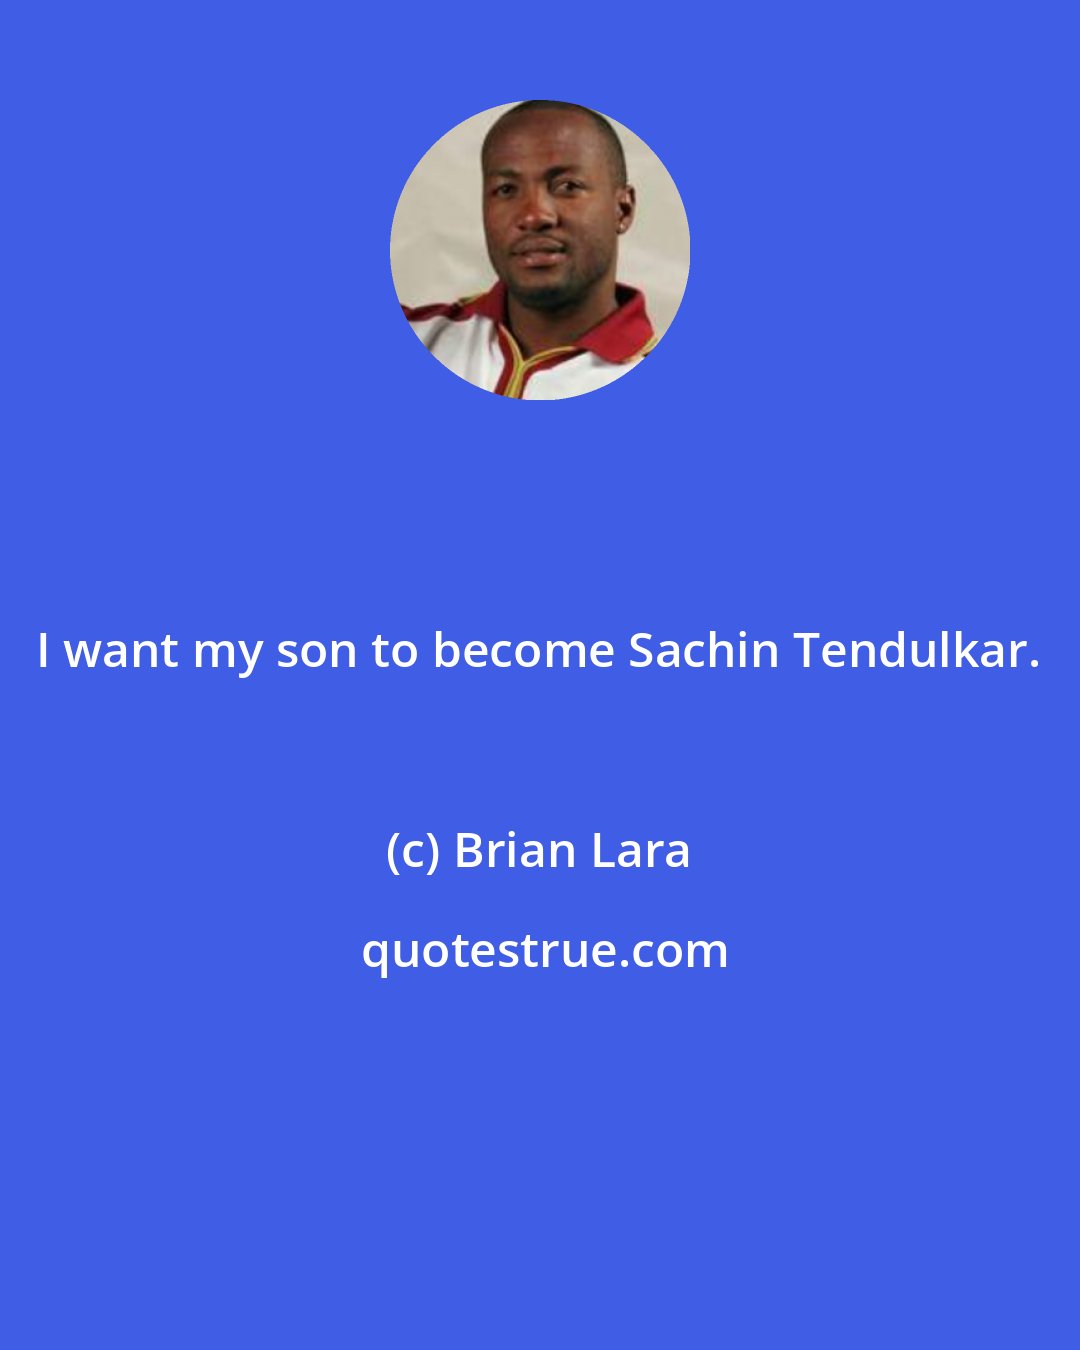 Brian Lara: I want my son to become Sachin Tendulkar.